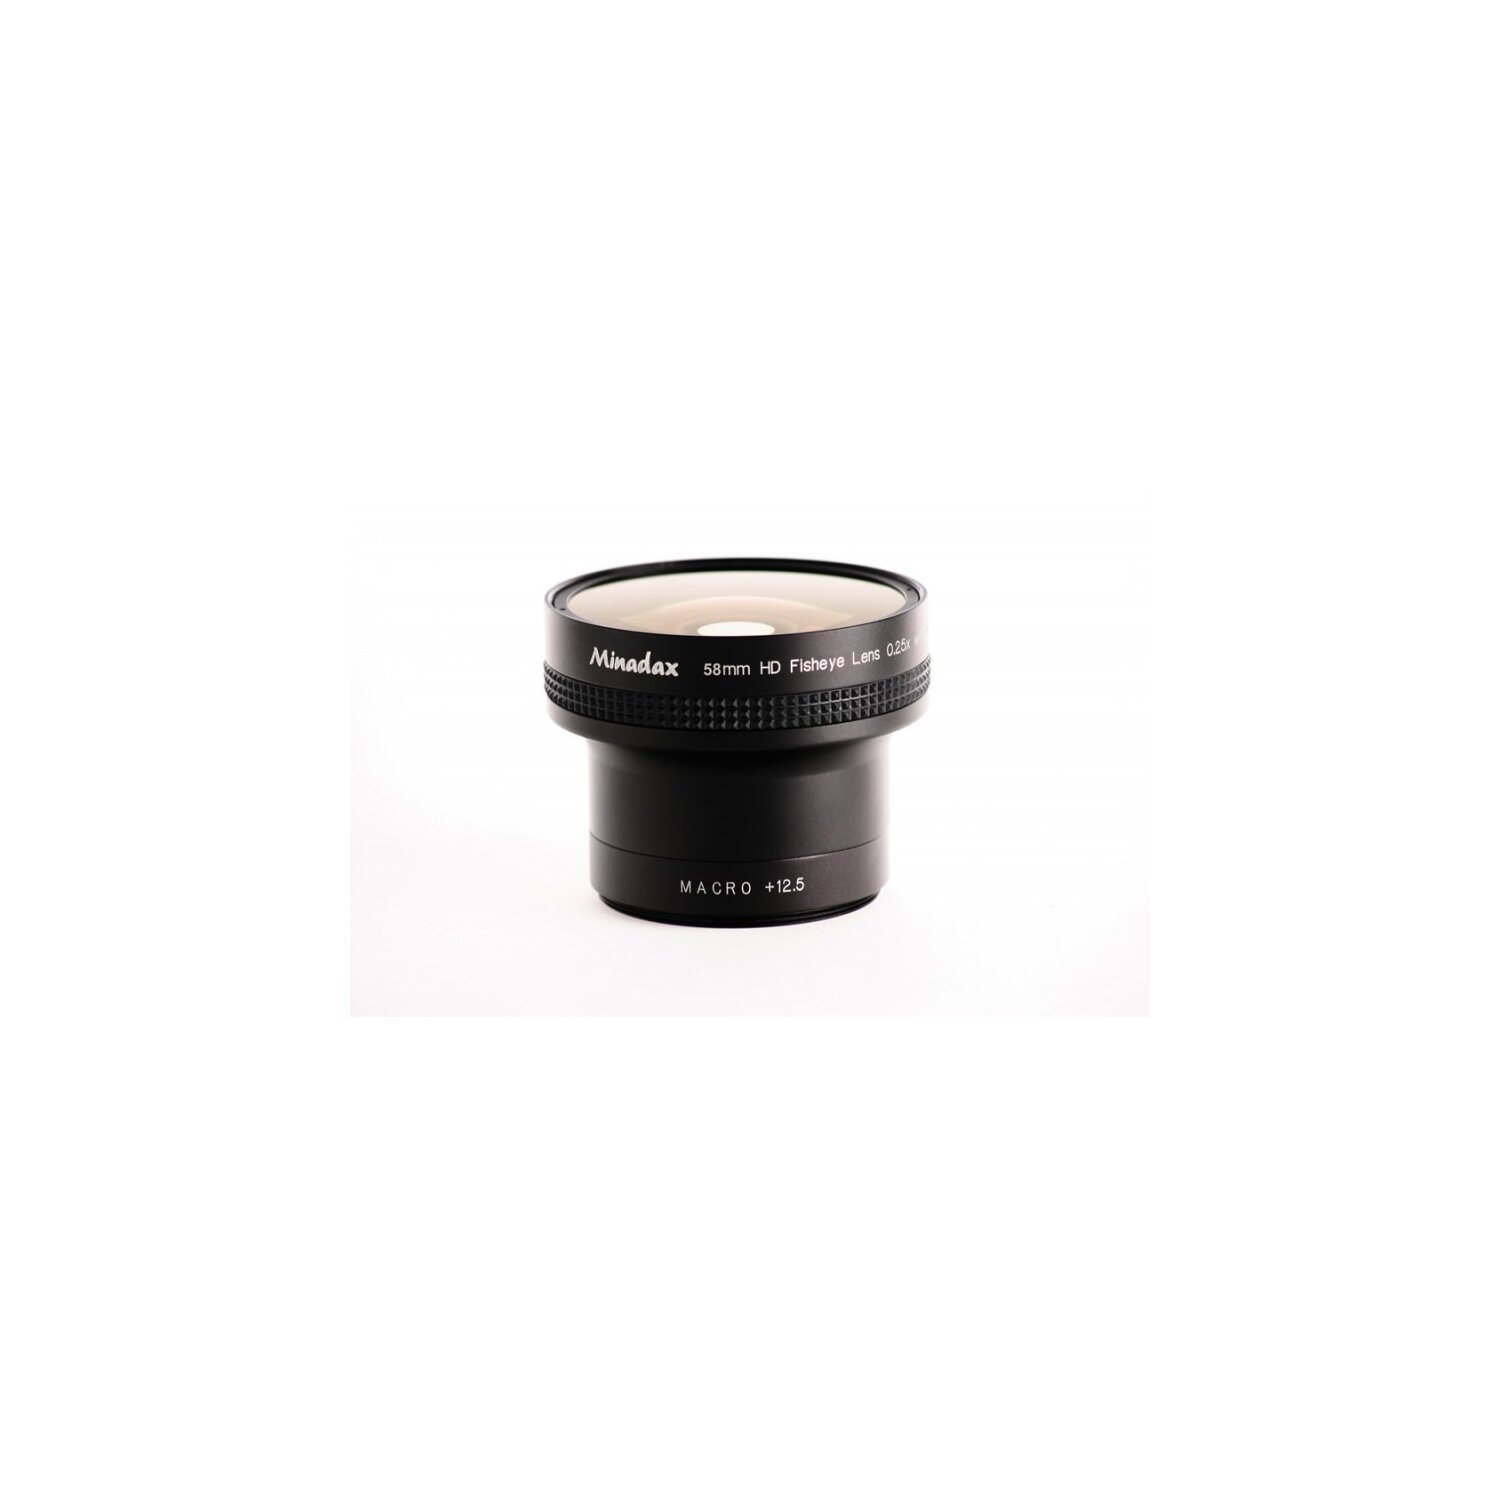 Minadax 0.25x Fisheye Vorsatz kompatibel mit Canon Powershot G10, G11, G12 - in schwarz